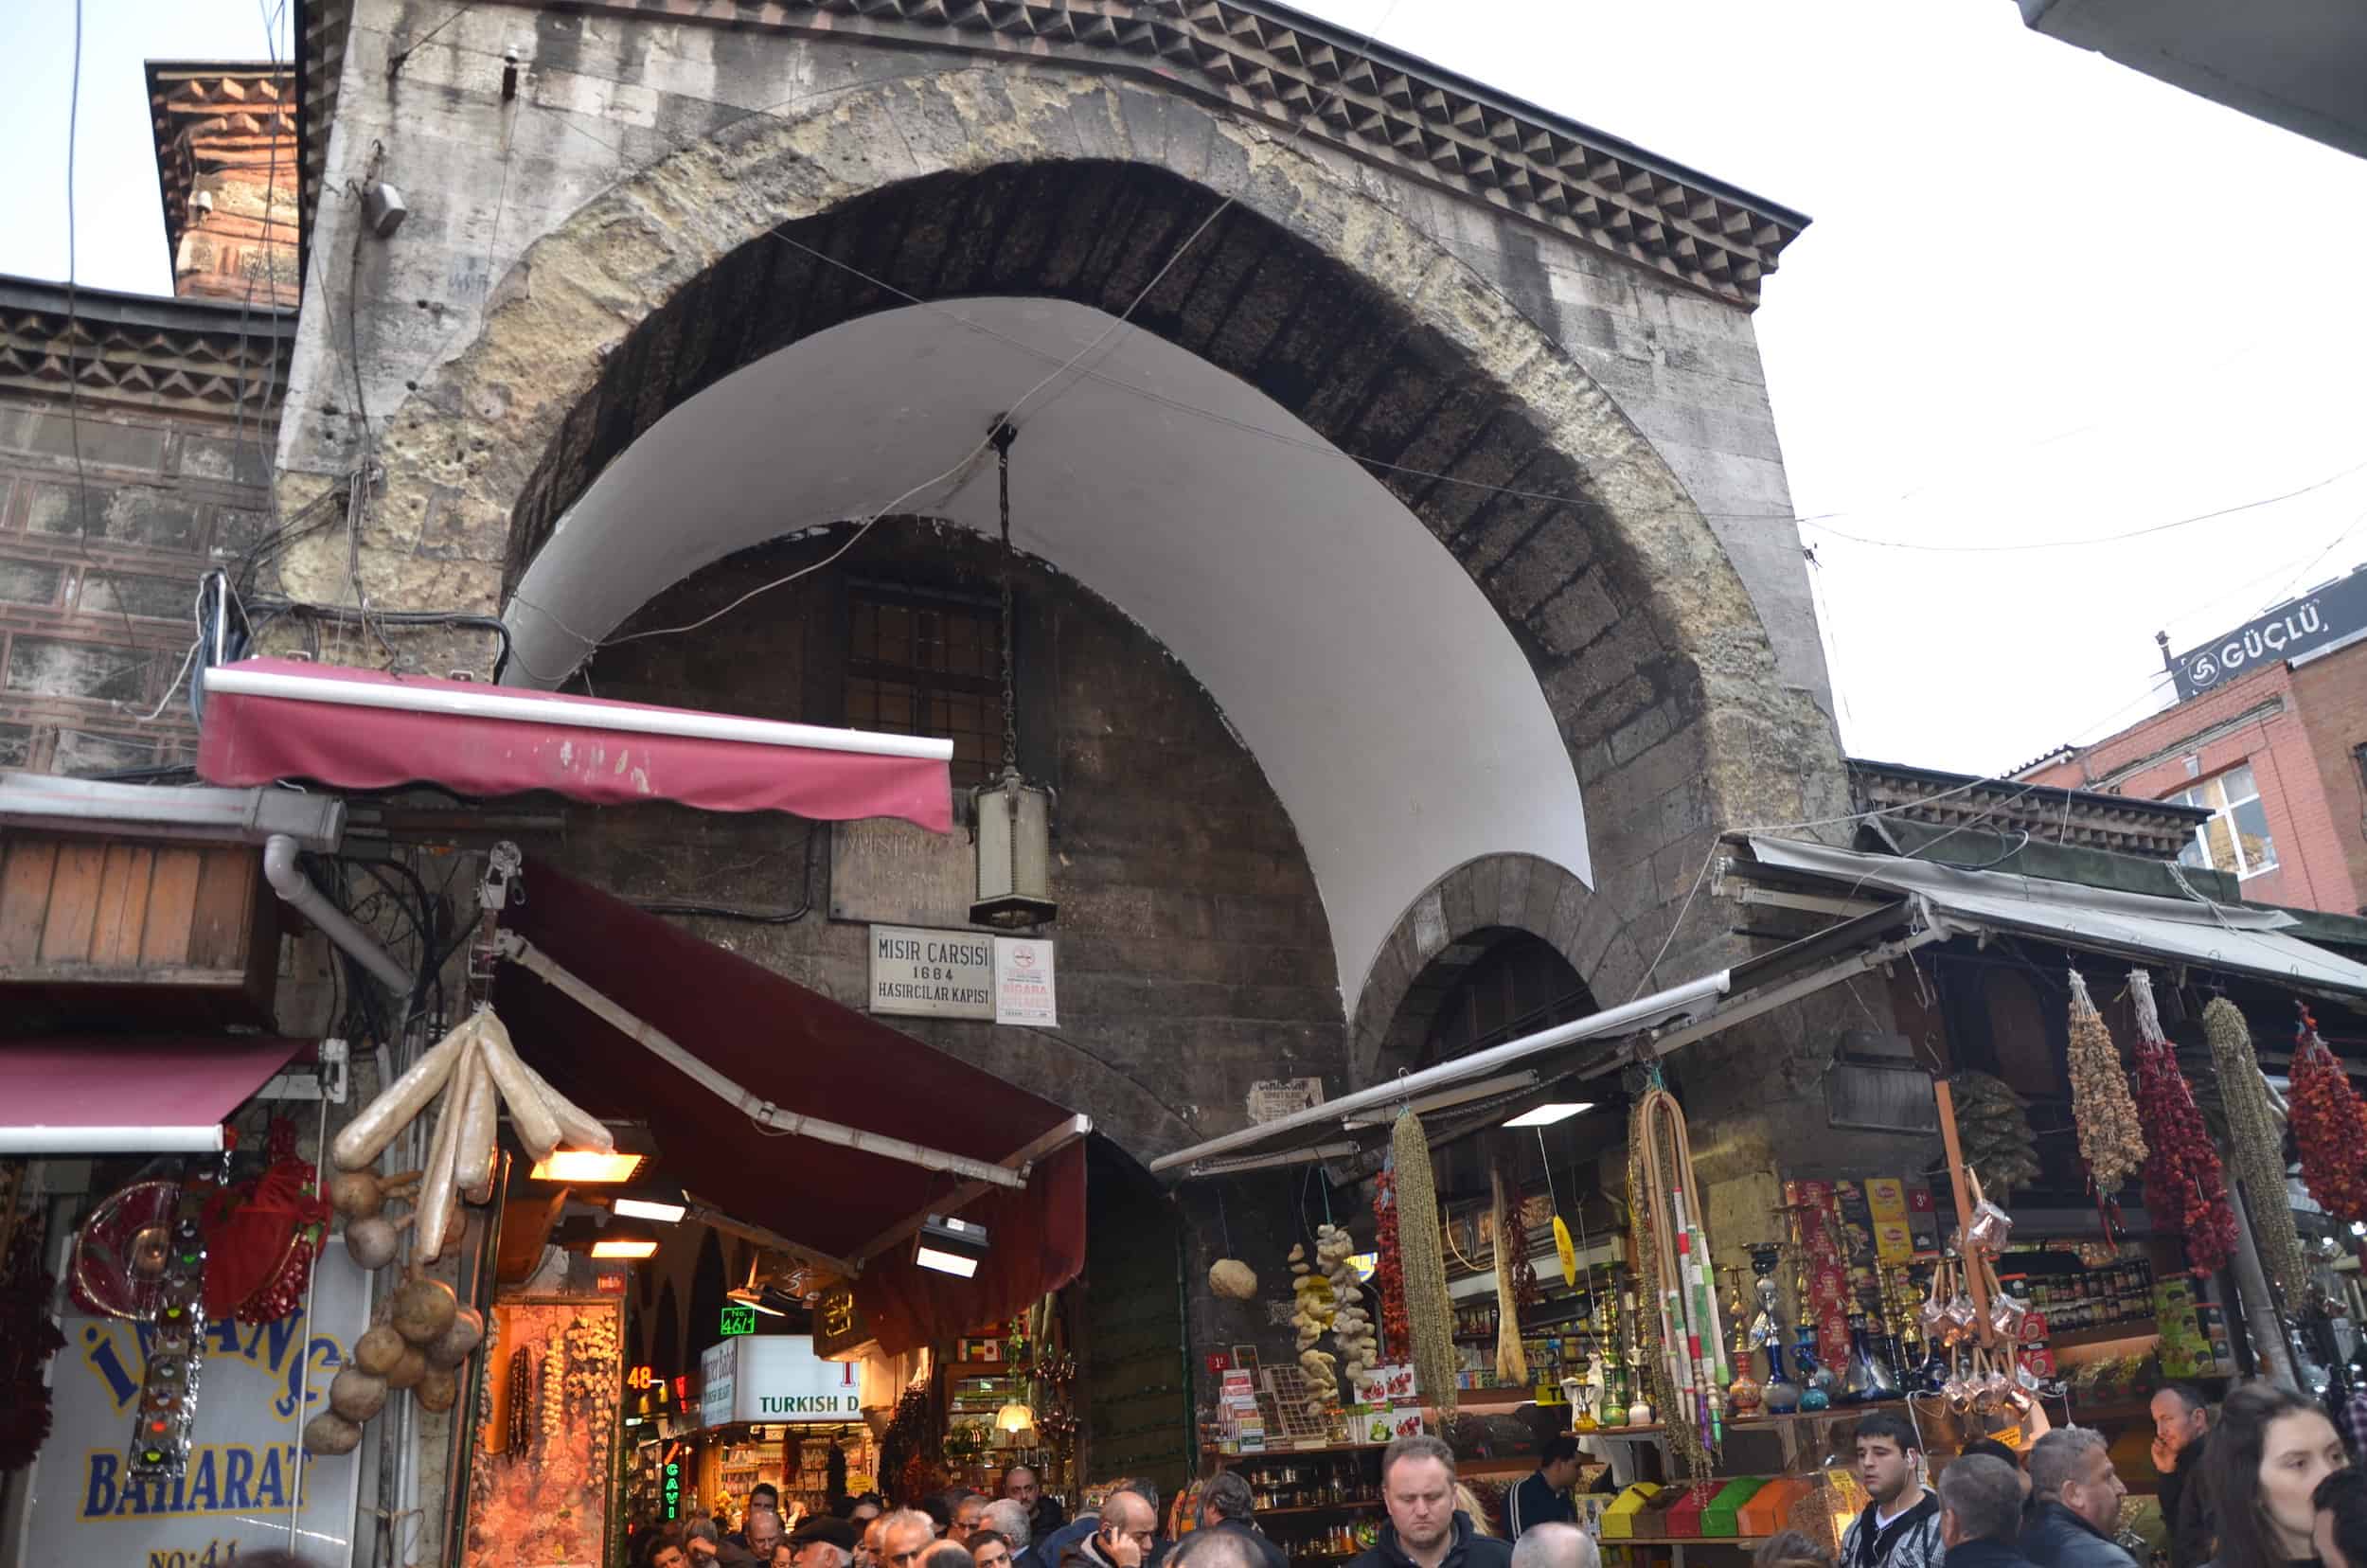 Hasırcılar Gate at the Spice Bazaar in Istanbul, Turkey